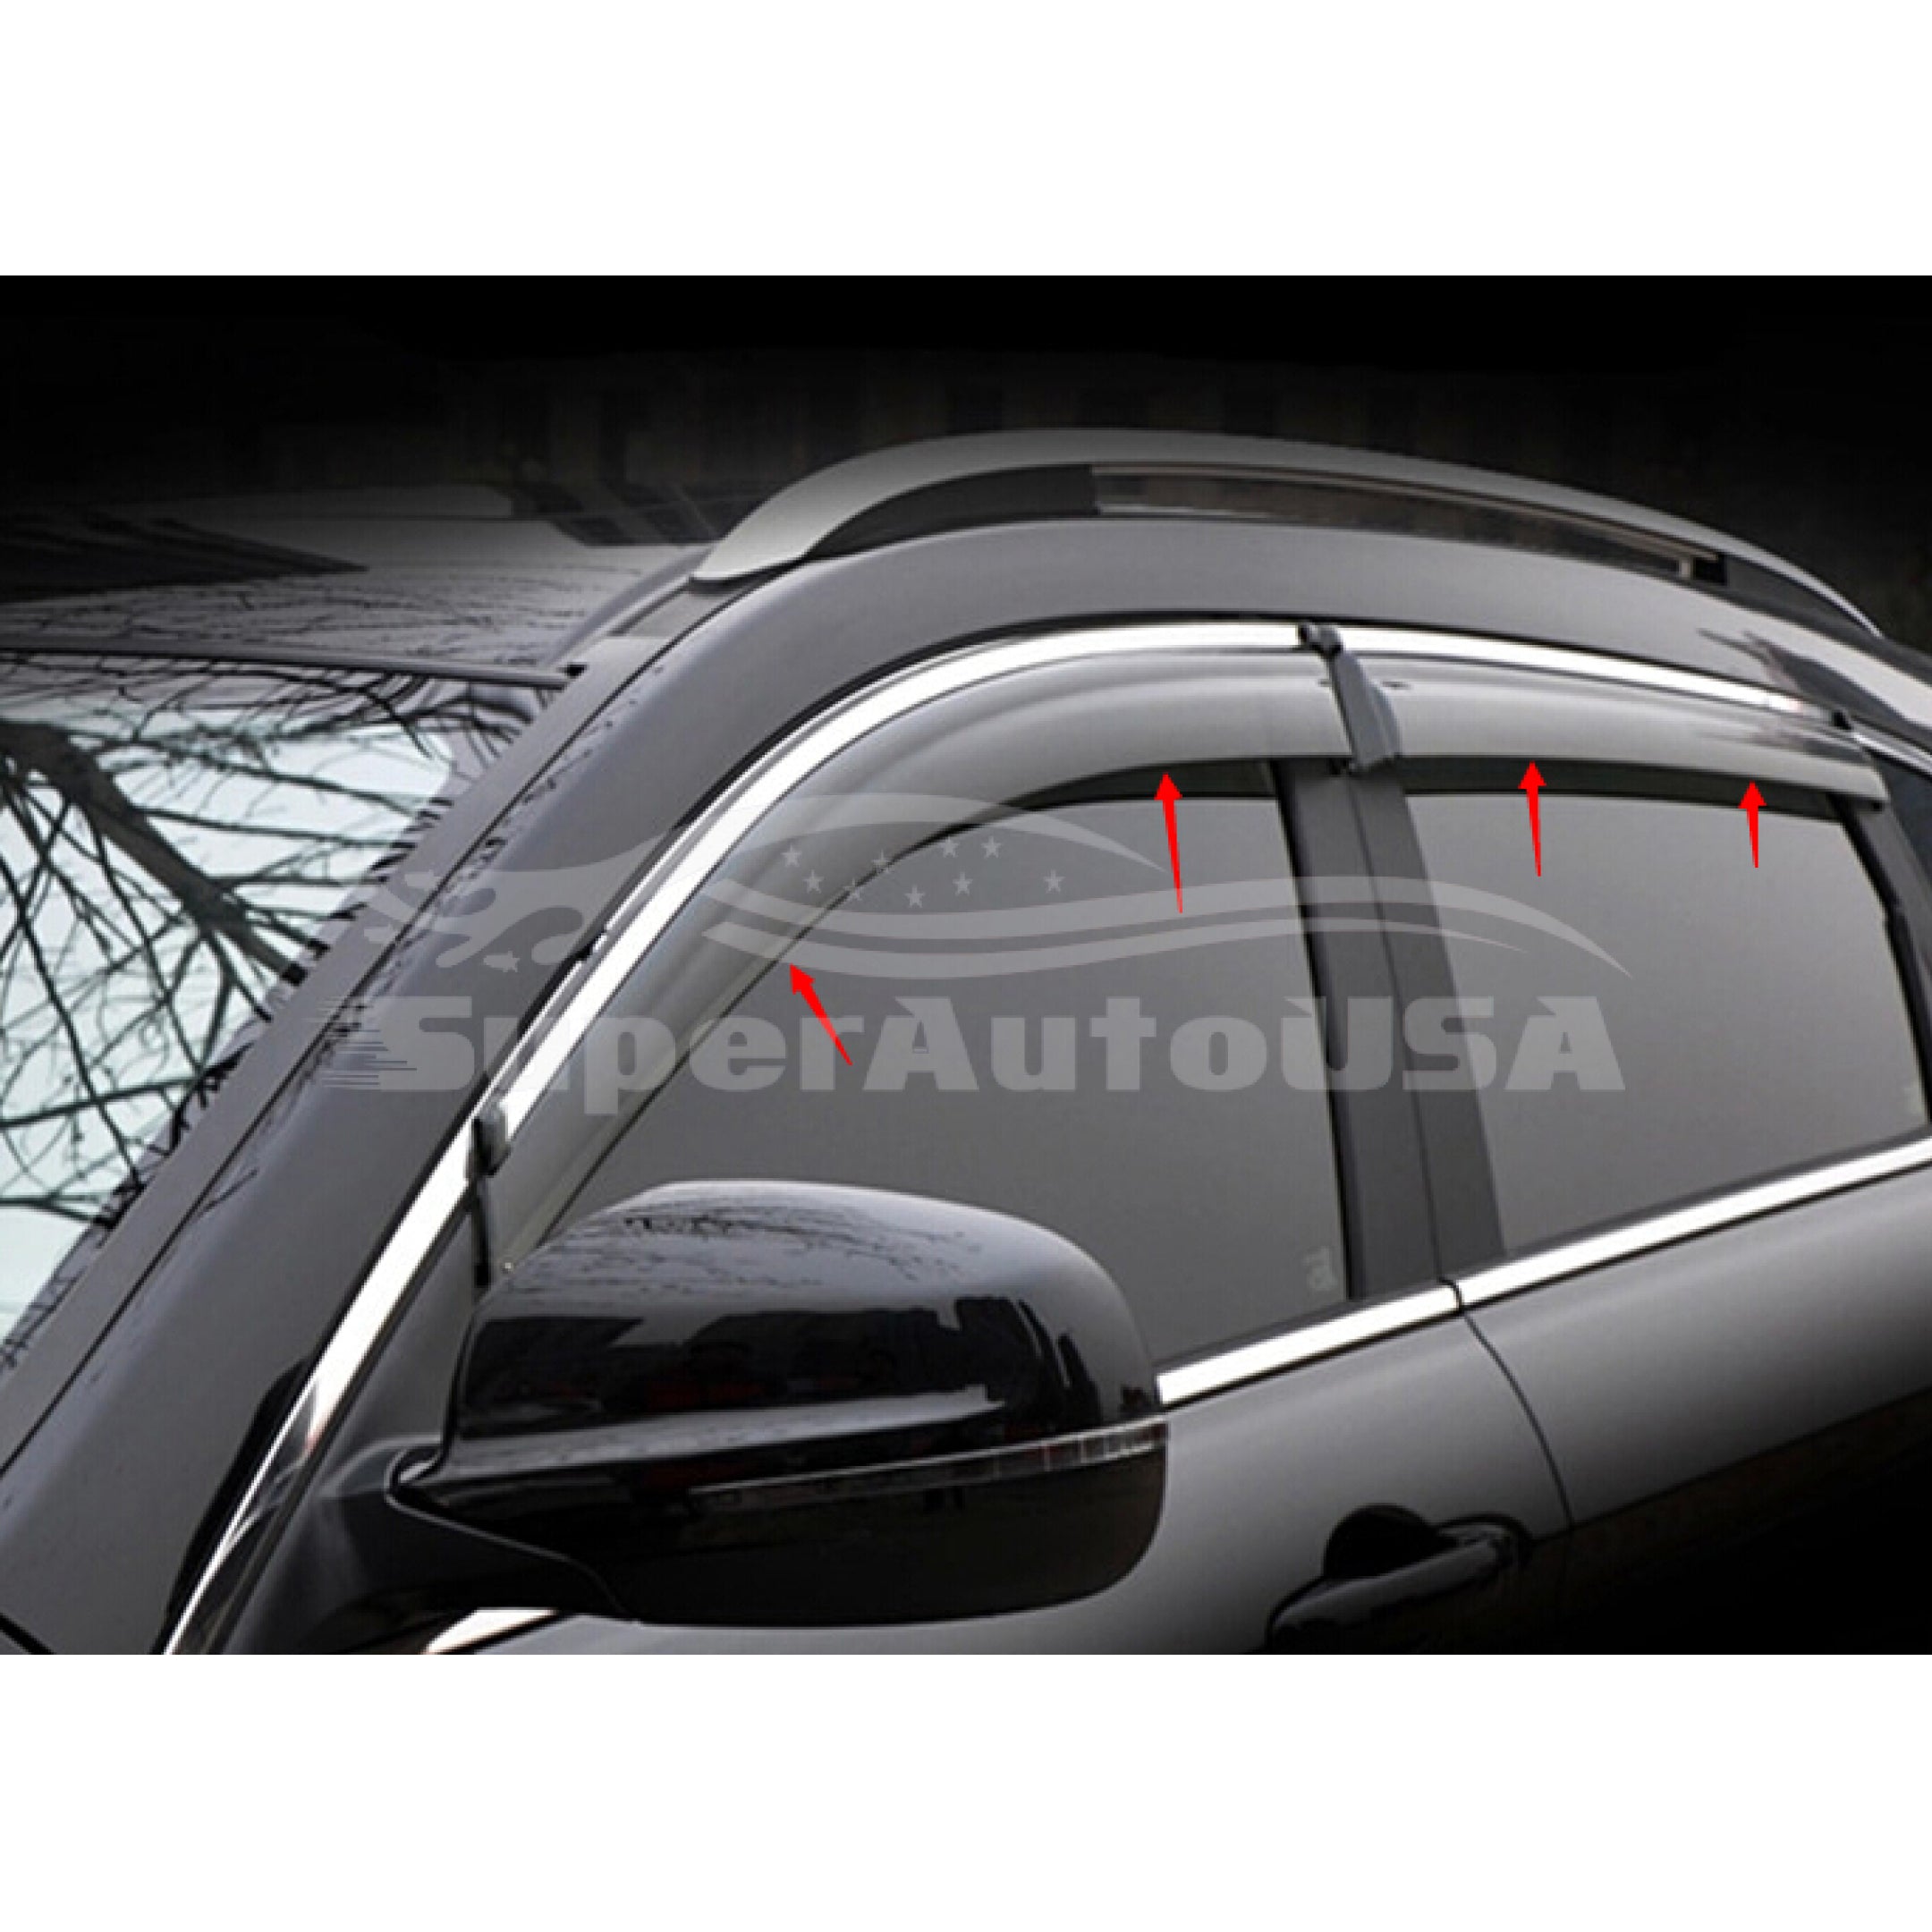 Ajuste 2019-2022 Nissan Altima Clip-On Chrome Trim Vent Window Viseras Rain Sun Wind Guards Shade Deflectors